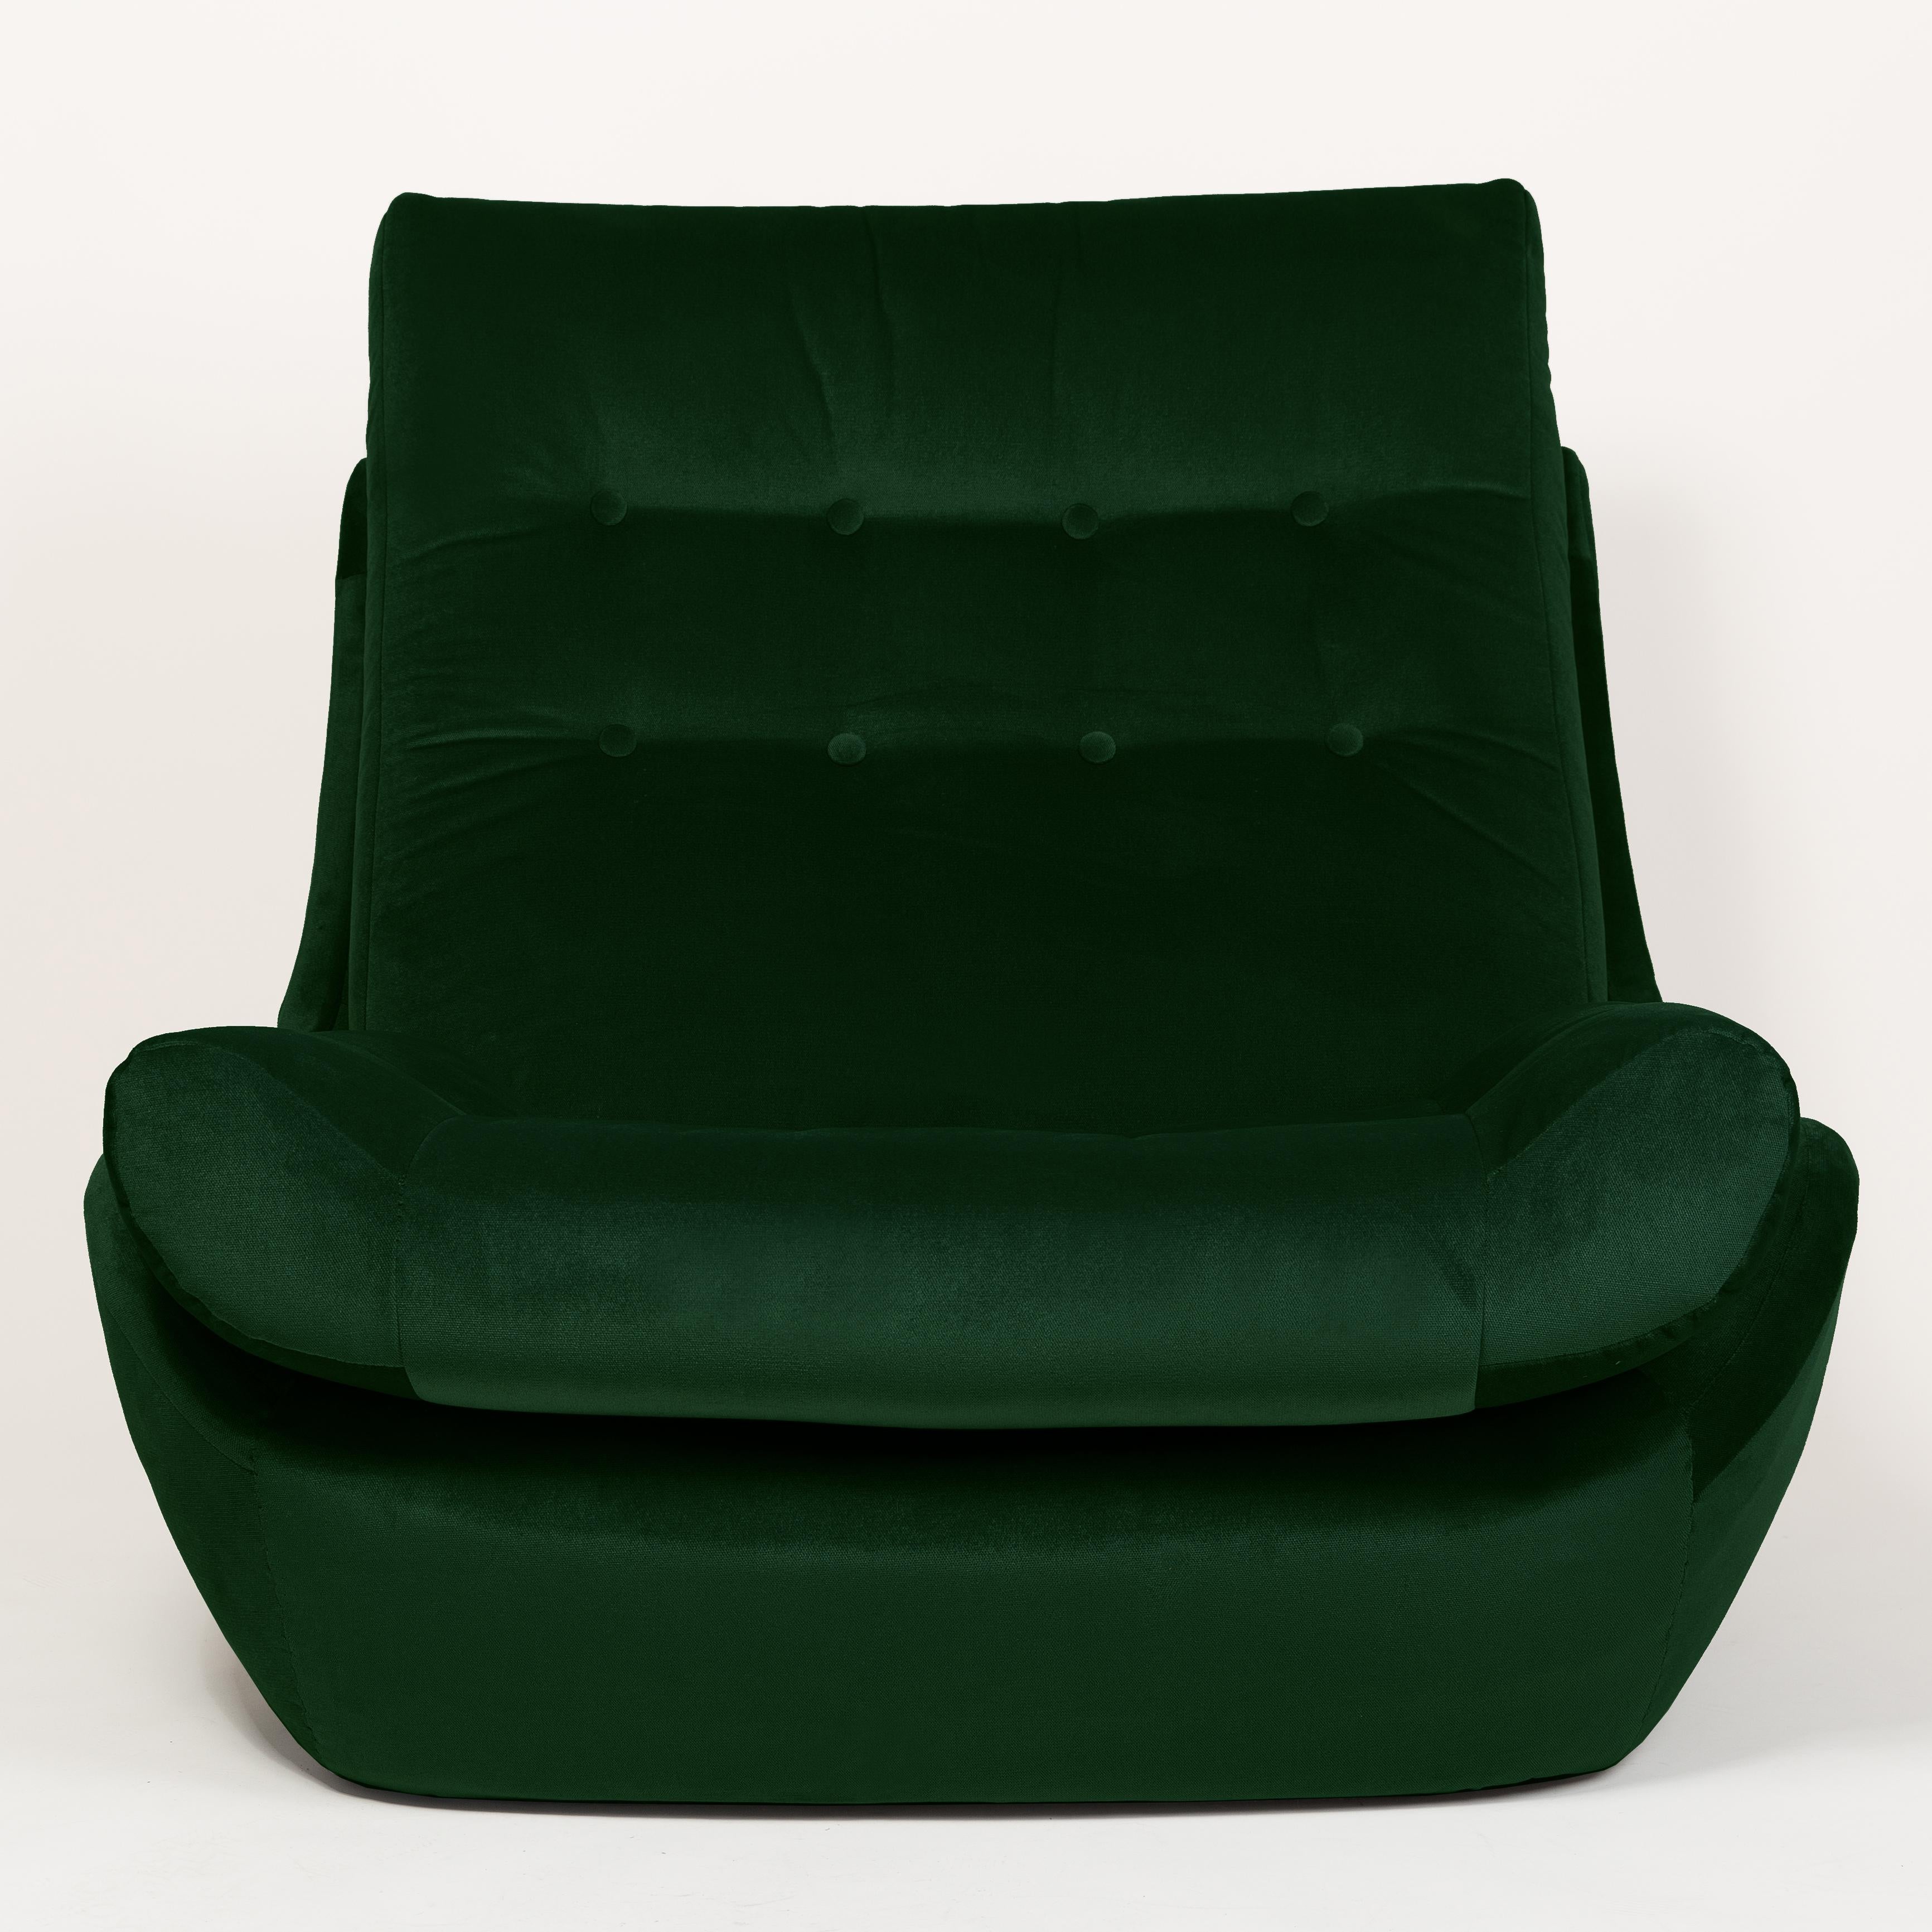 Atlantis Sessel aus den 1960er Jahren, hergestellt in der schlesischen Möbelfabrik in Swiebodzin sind zur Zeit einzigartig. Aufgrund ihrer Abmessungen fügen sie sich auch in kleinen Wohnungen perfekt ein und bieten Komfort und eine schöne